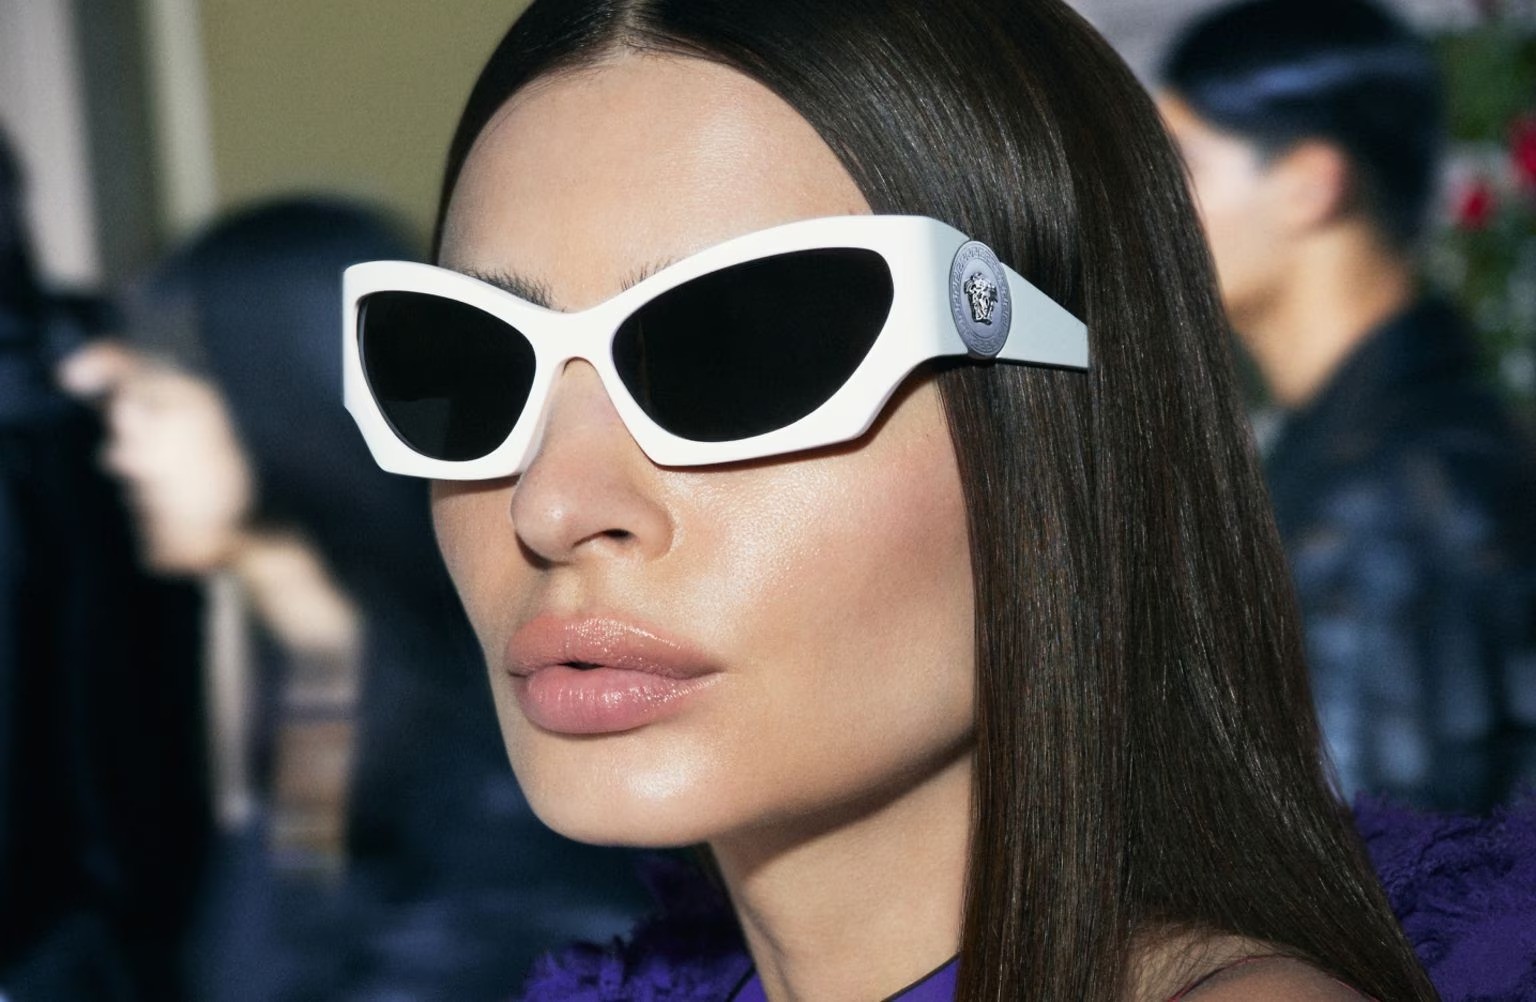 Versace 4450 31487  - Óculos de Sol